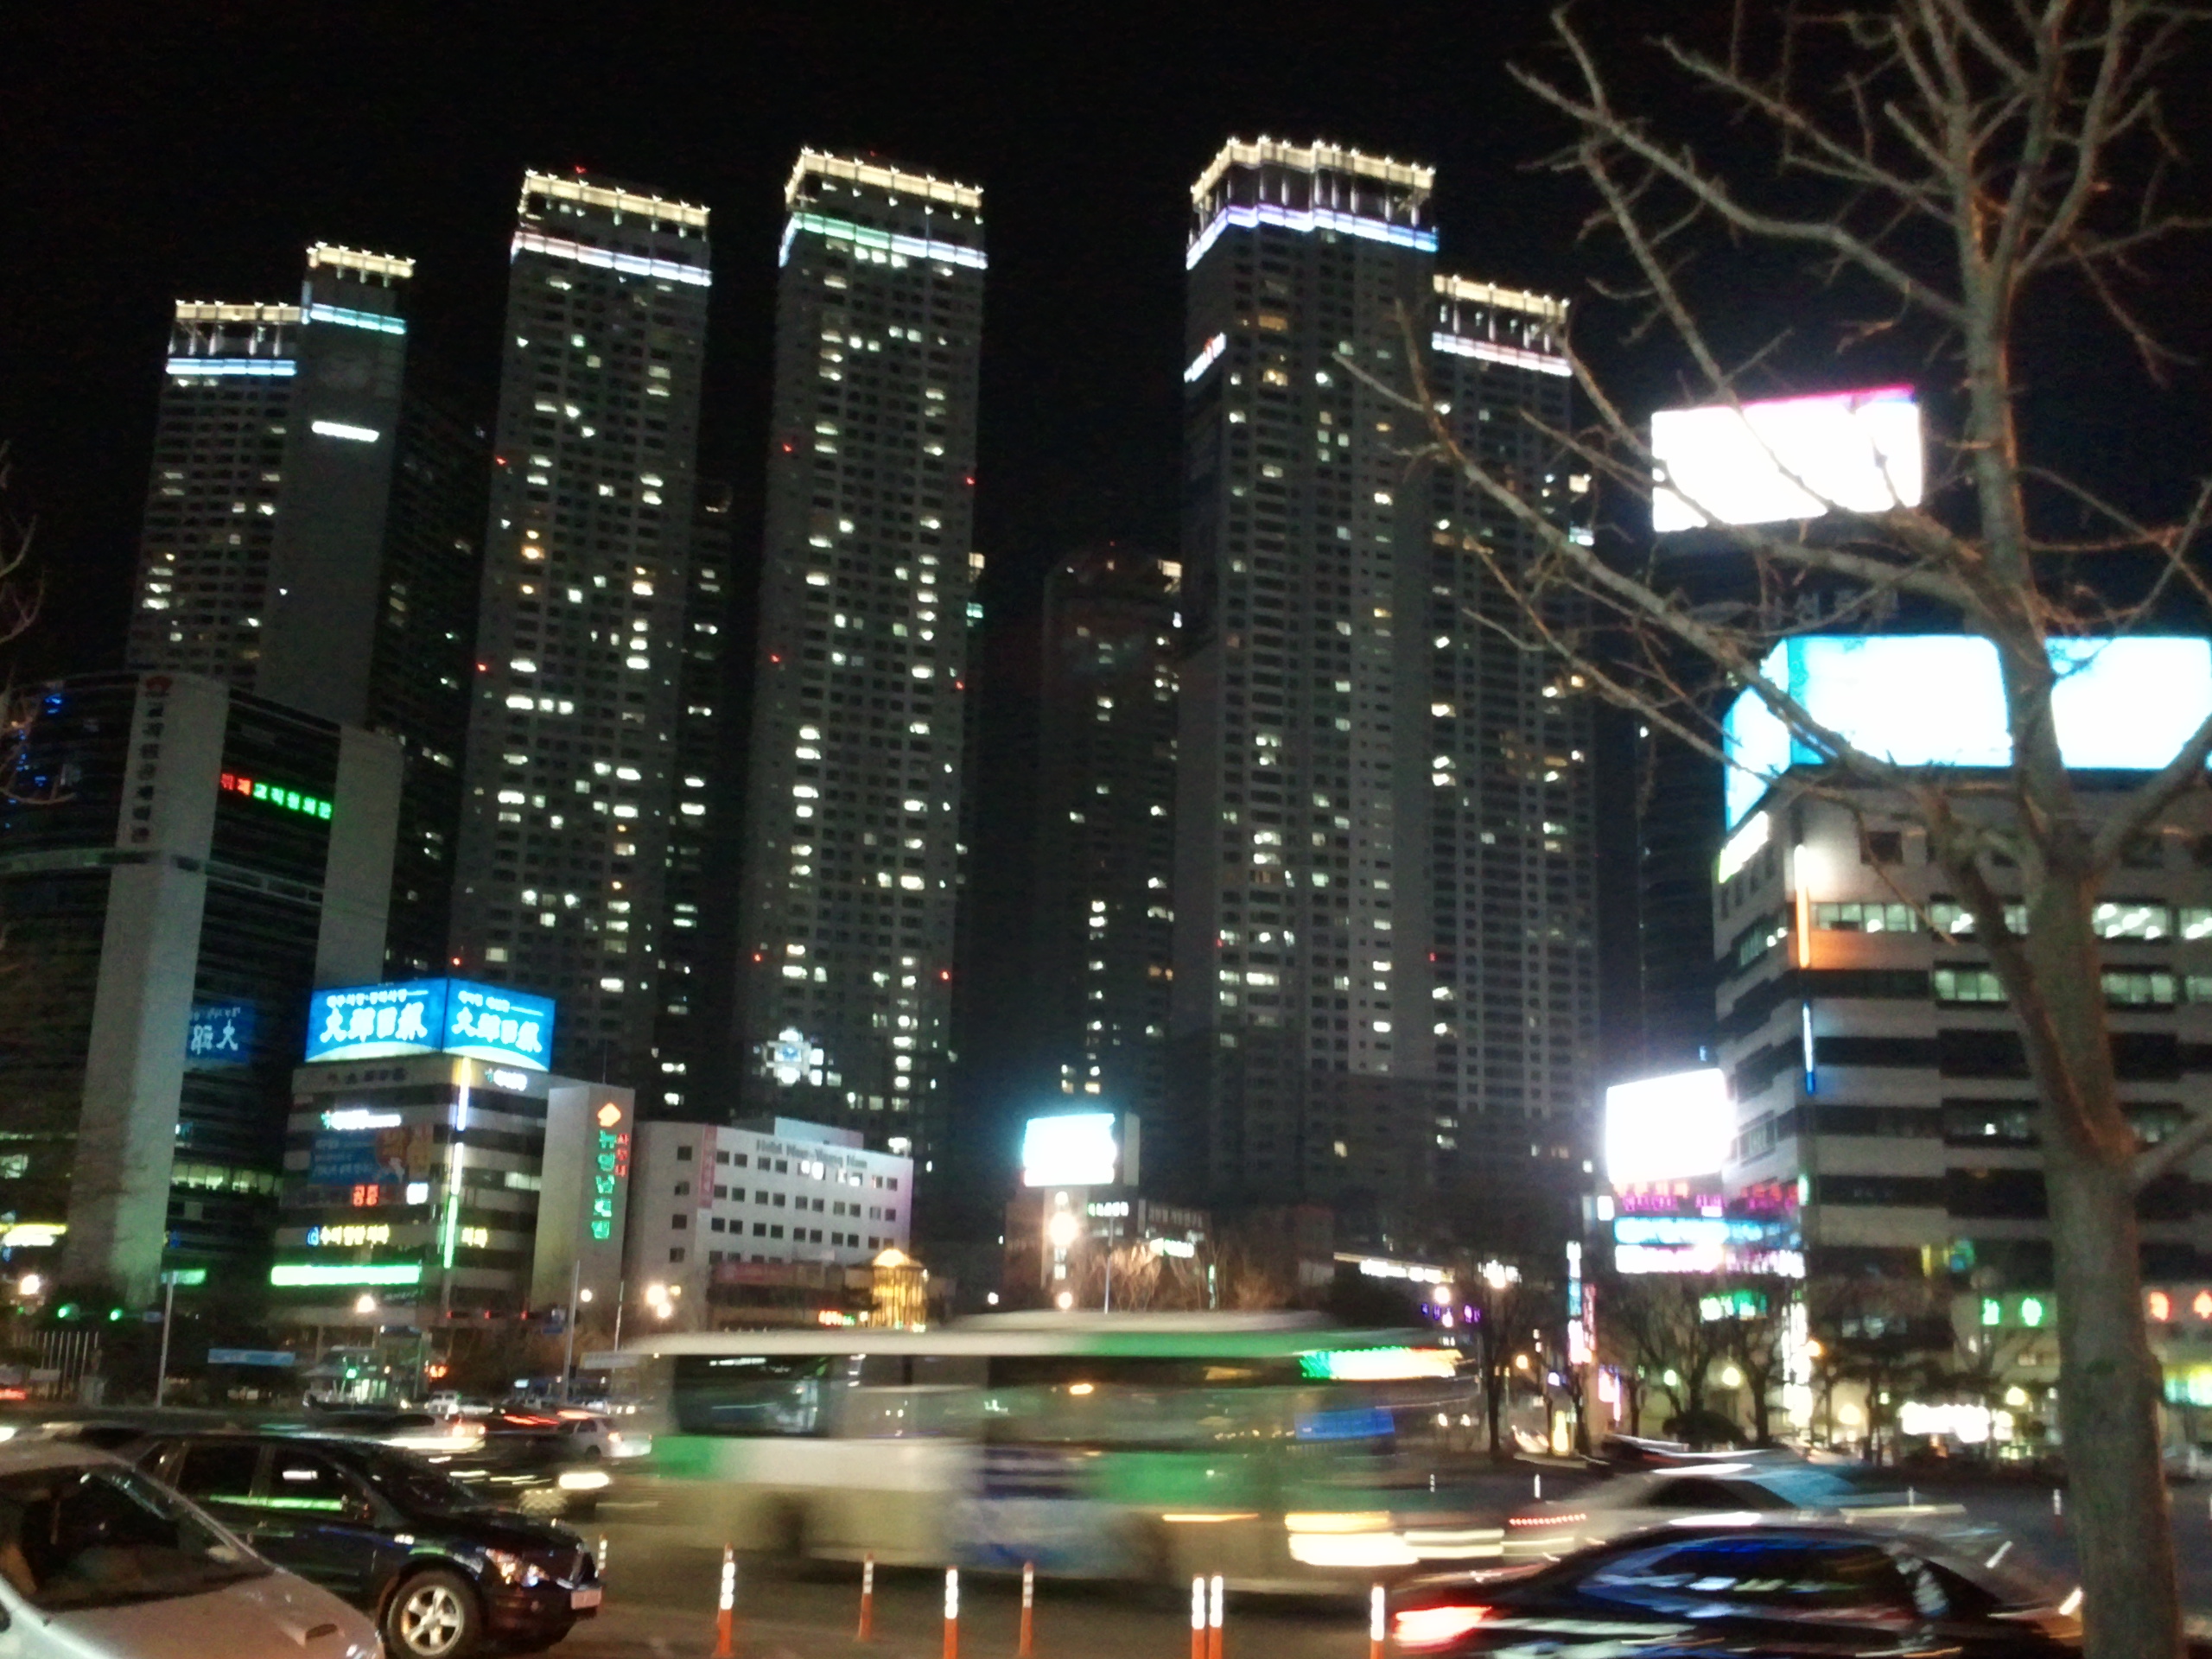 Тегу город. Тэгу Корея. Daegu City. Ночной Сеул Южная Корея. Тэгу Южная Корея достопримечательности.